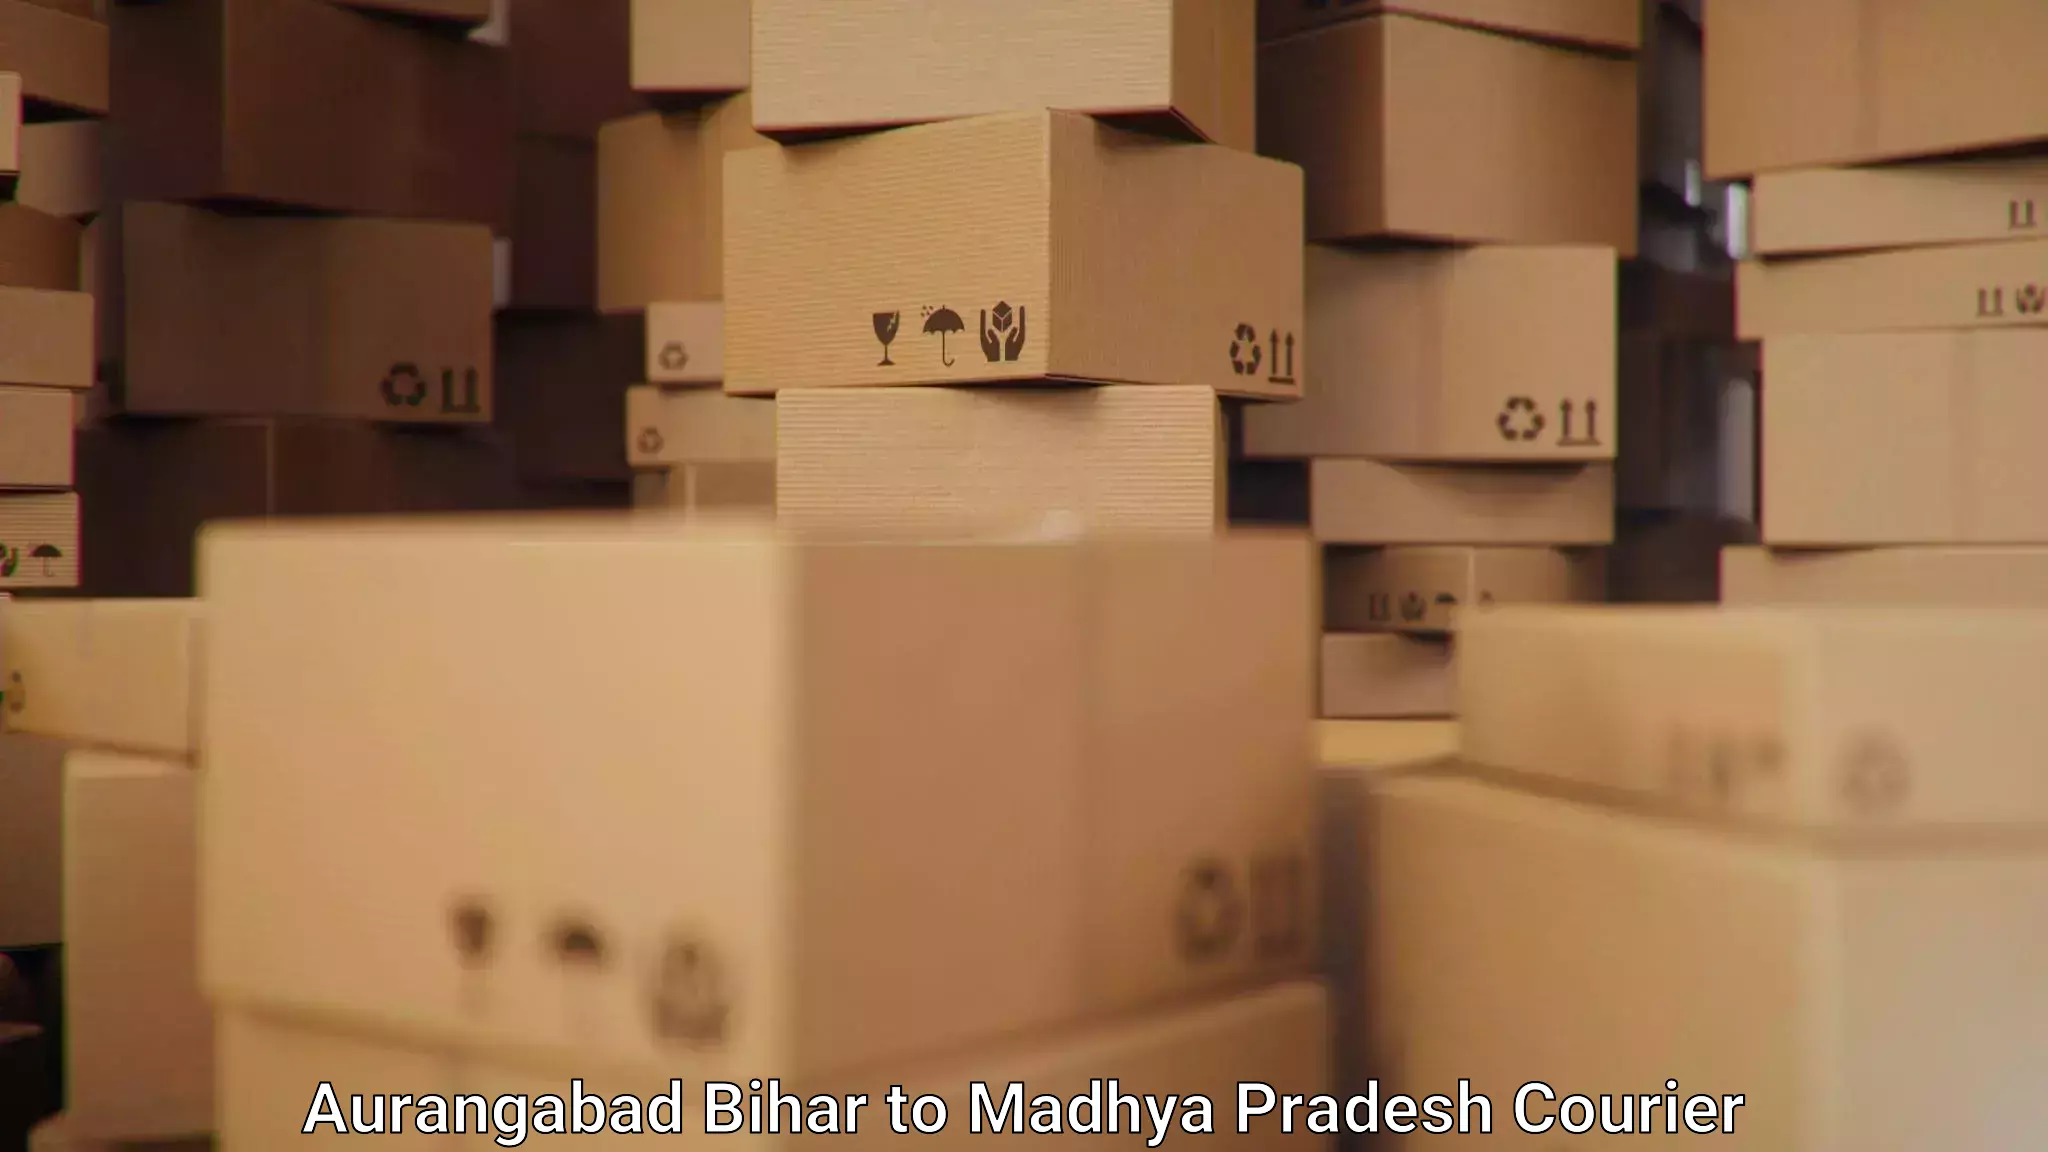 Full-service courier options Aurangabad Bihar to East Nimar